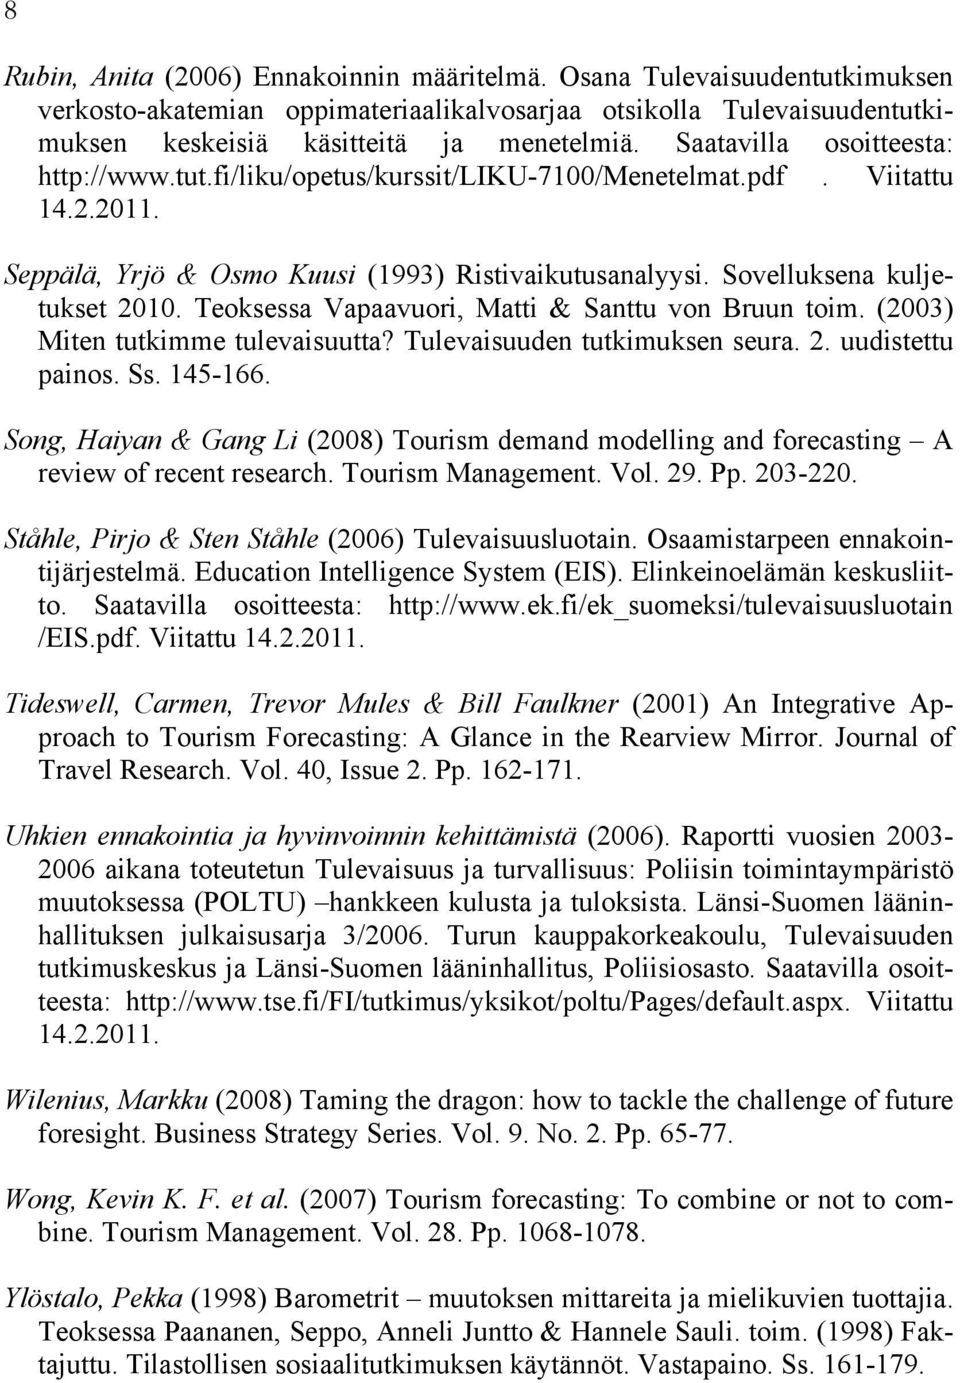 Teoksessa Vapaavuori, Matti & Santtu von Bruun toim. (2003) Miten tutkimme tulevaisuutta? Tulevaisuuden tutkimuksen seura. 2. uudistettu painos. Ss. 145-166.